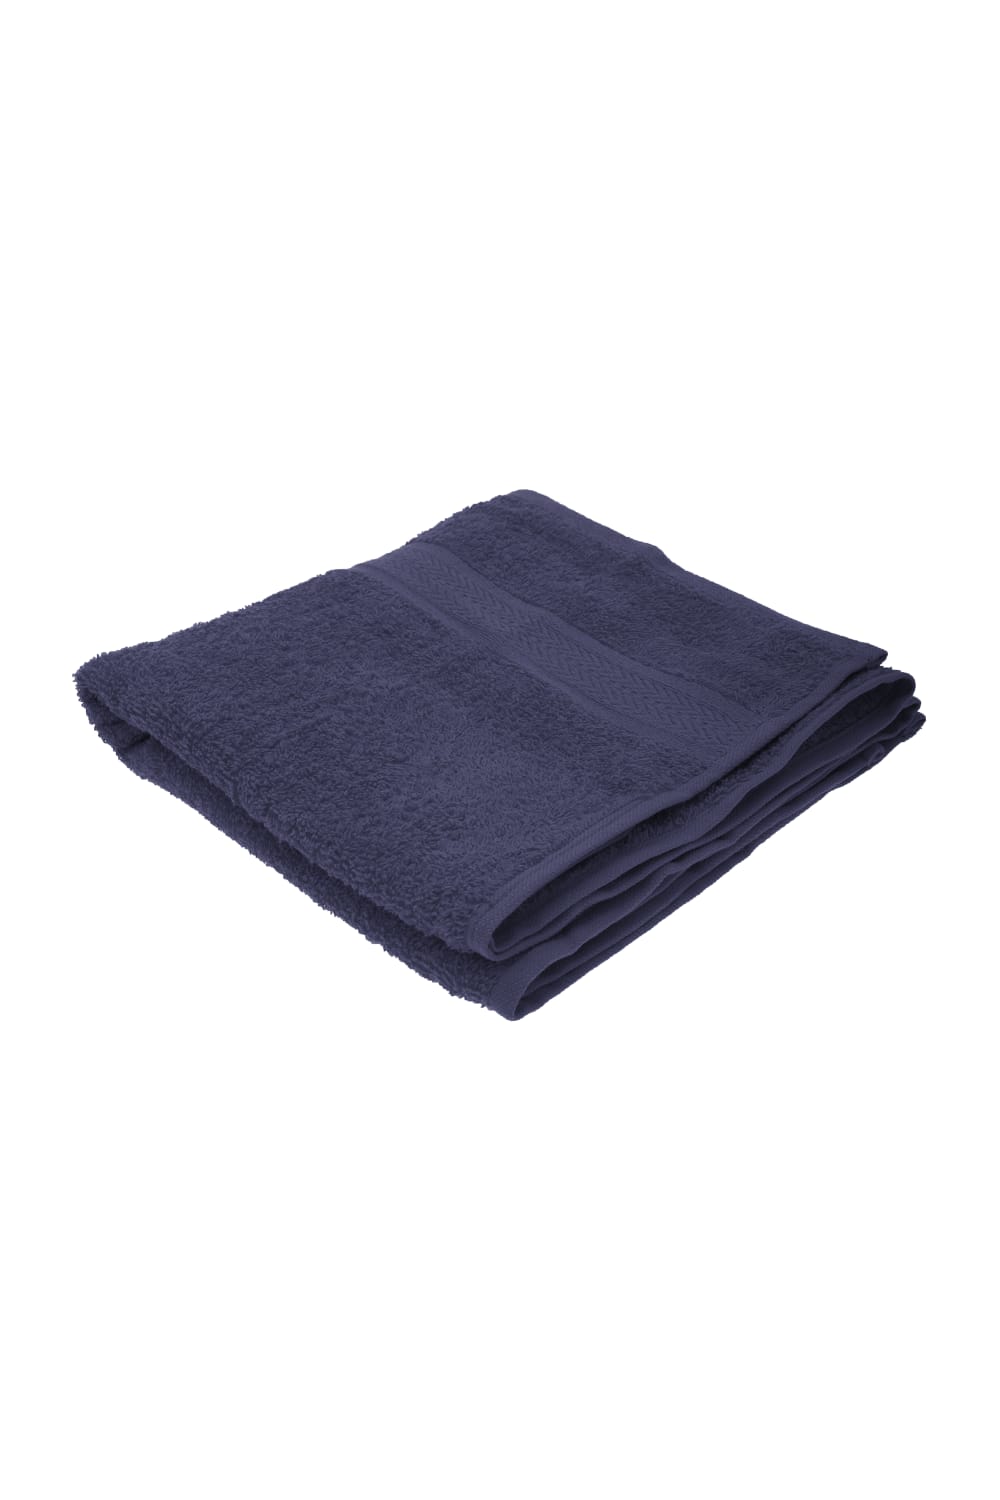 Jassz Plain Towel (Navy Blue) (One Size)